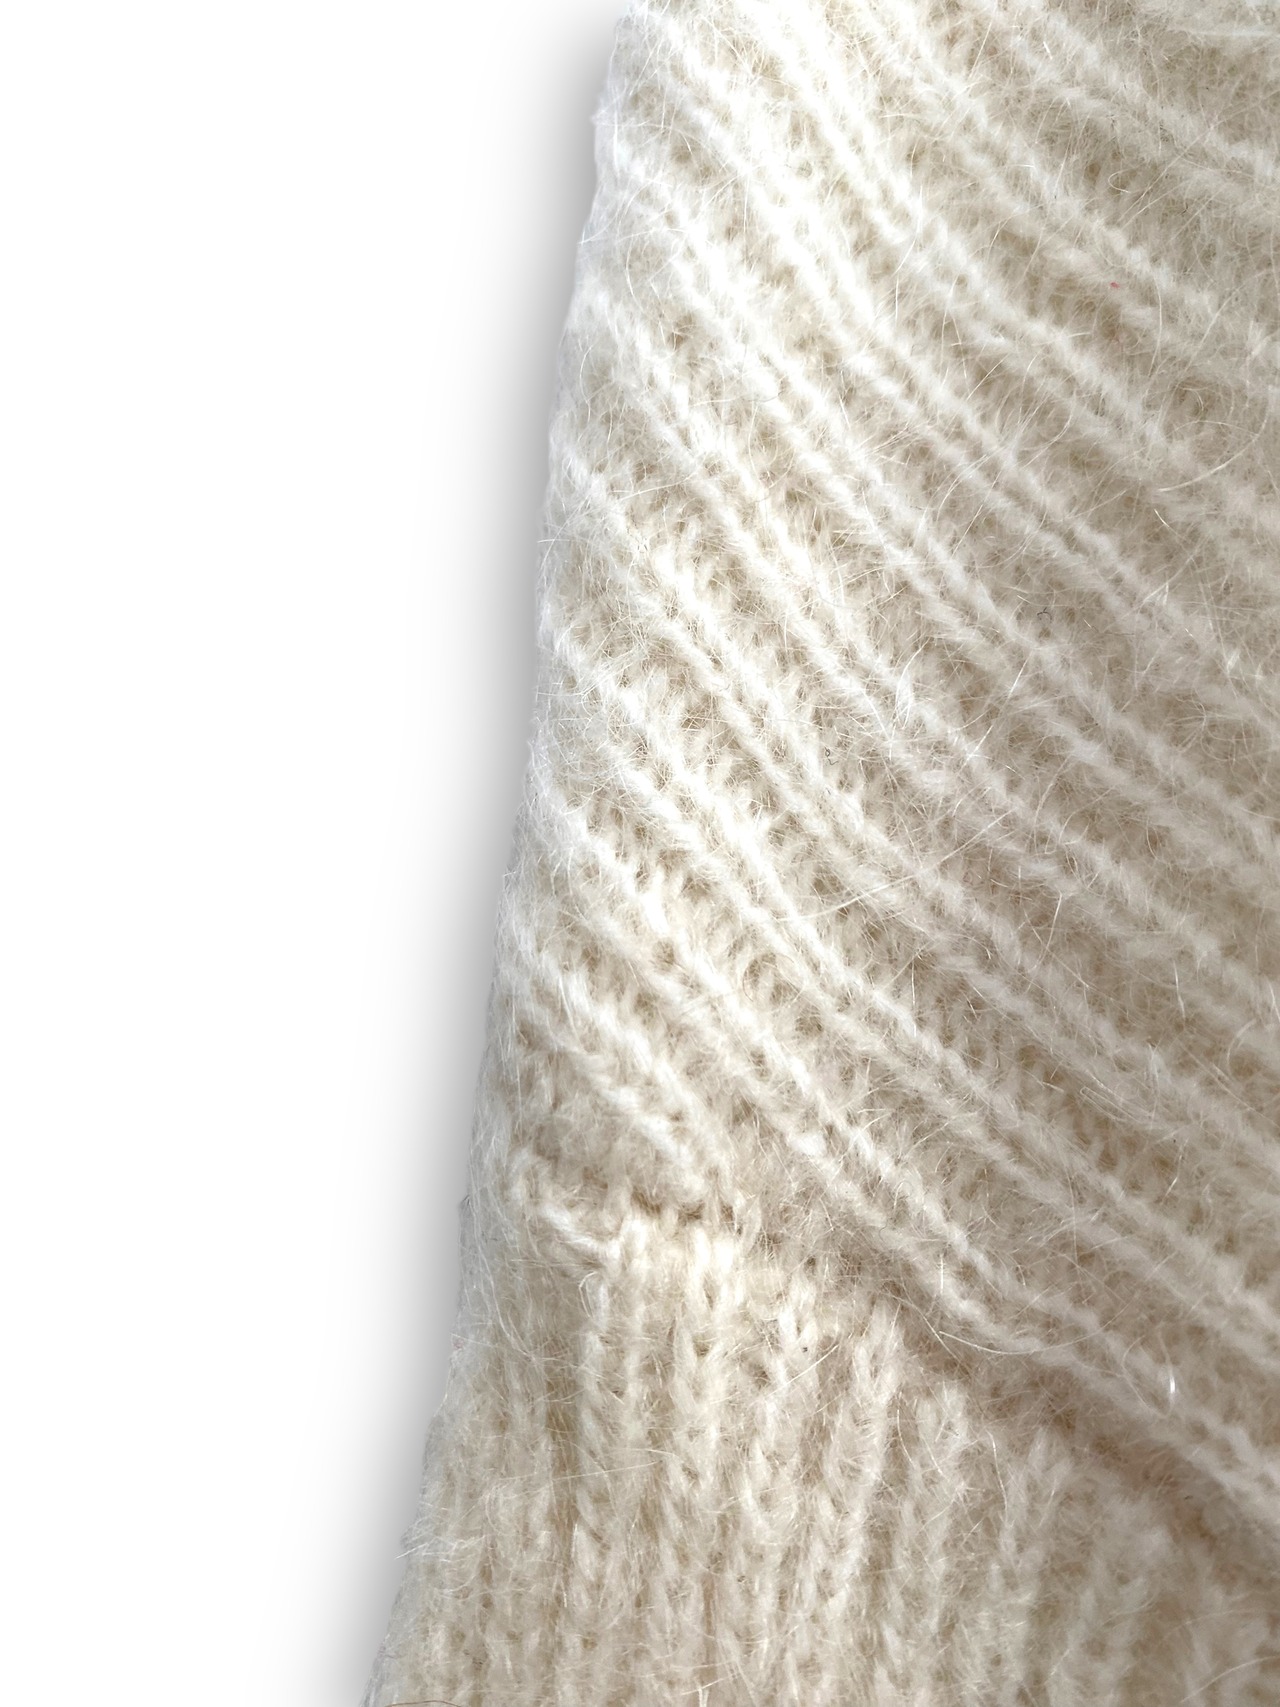 Over turtleneck knit